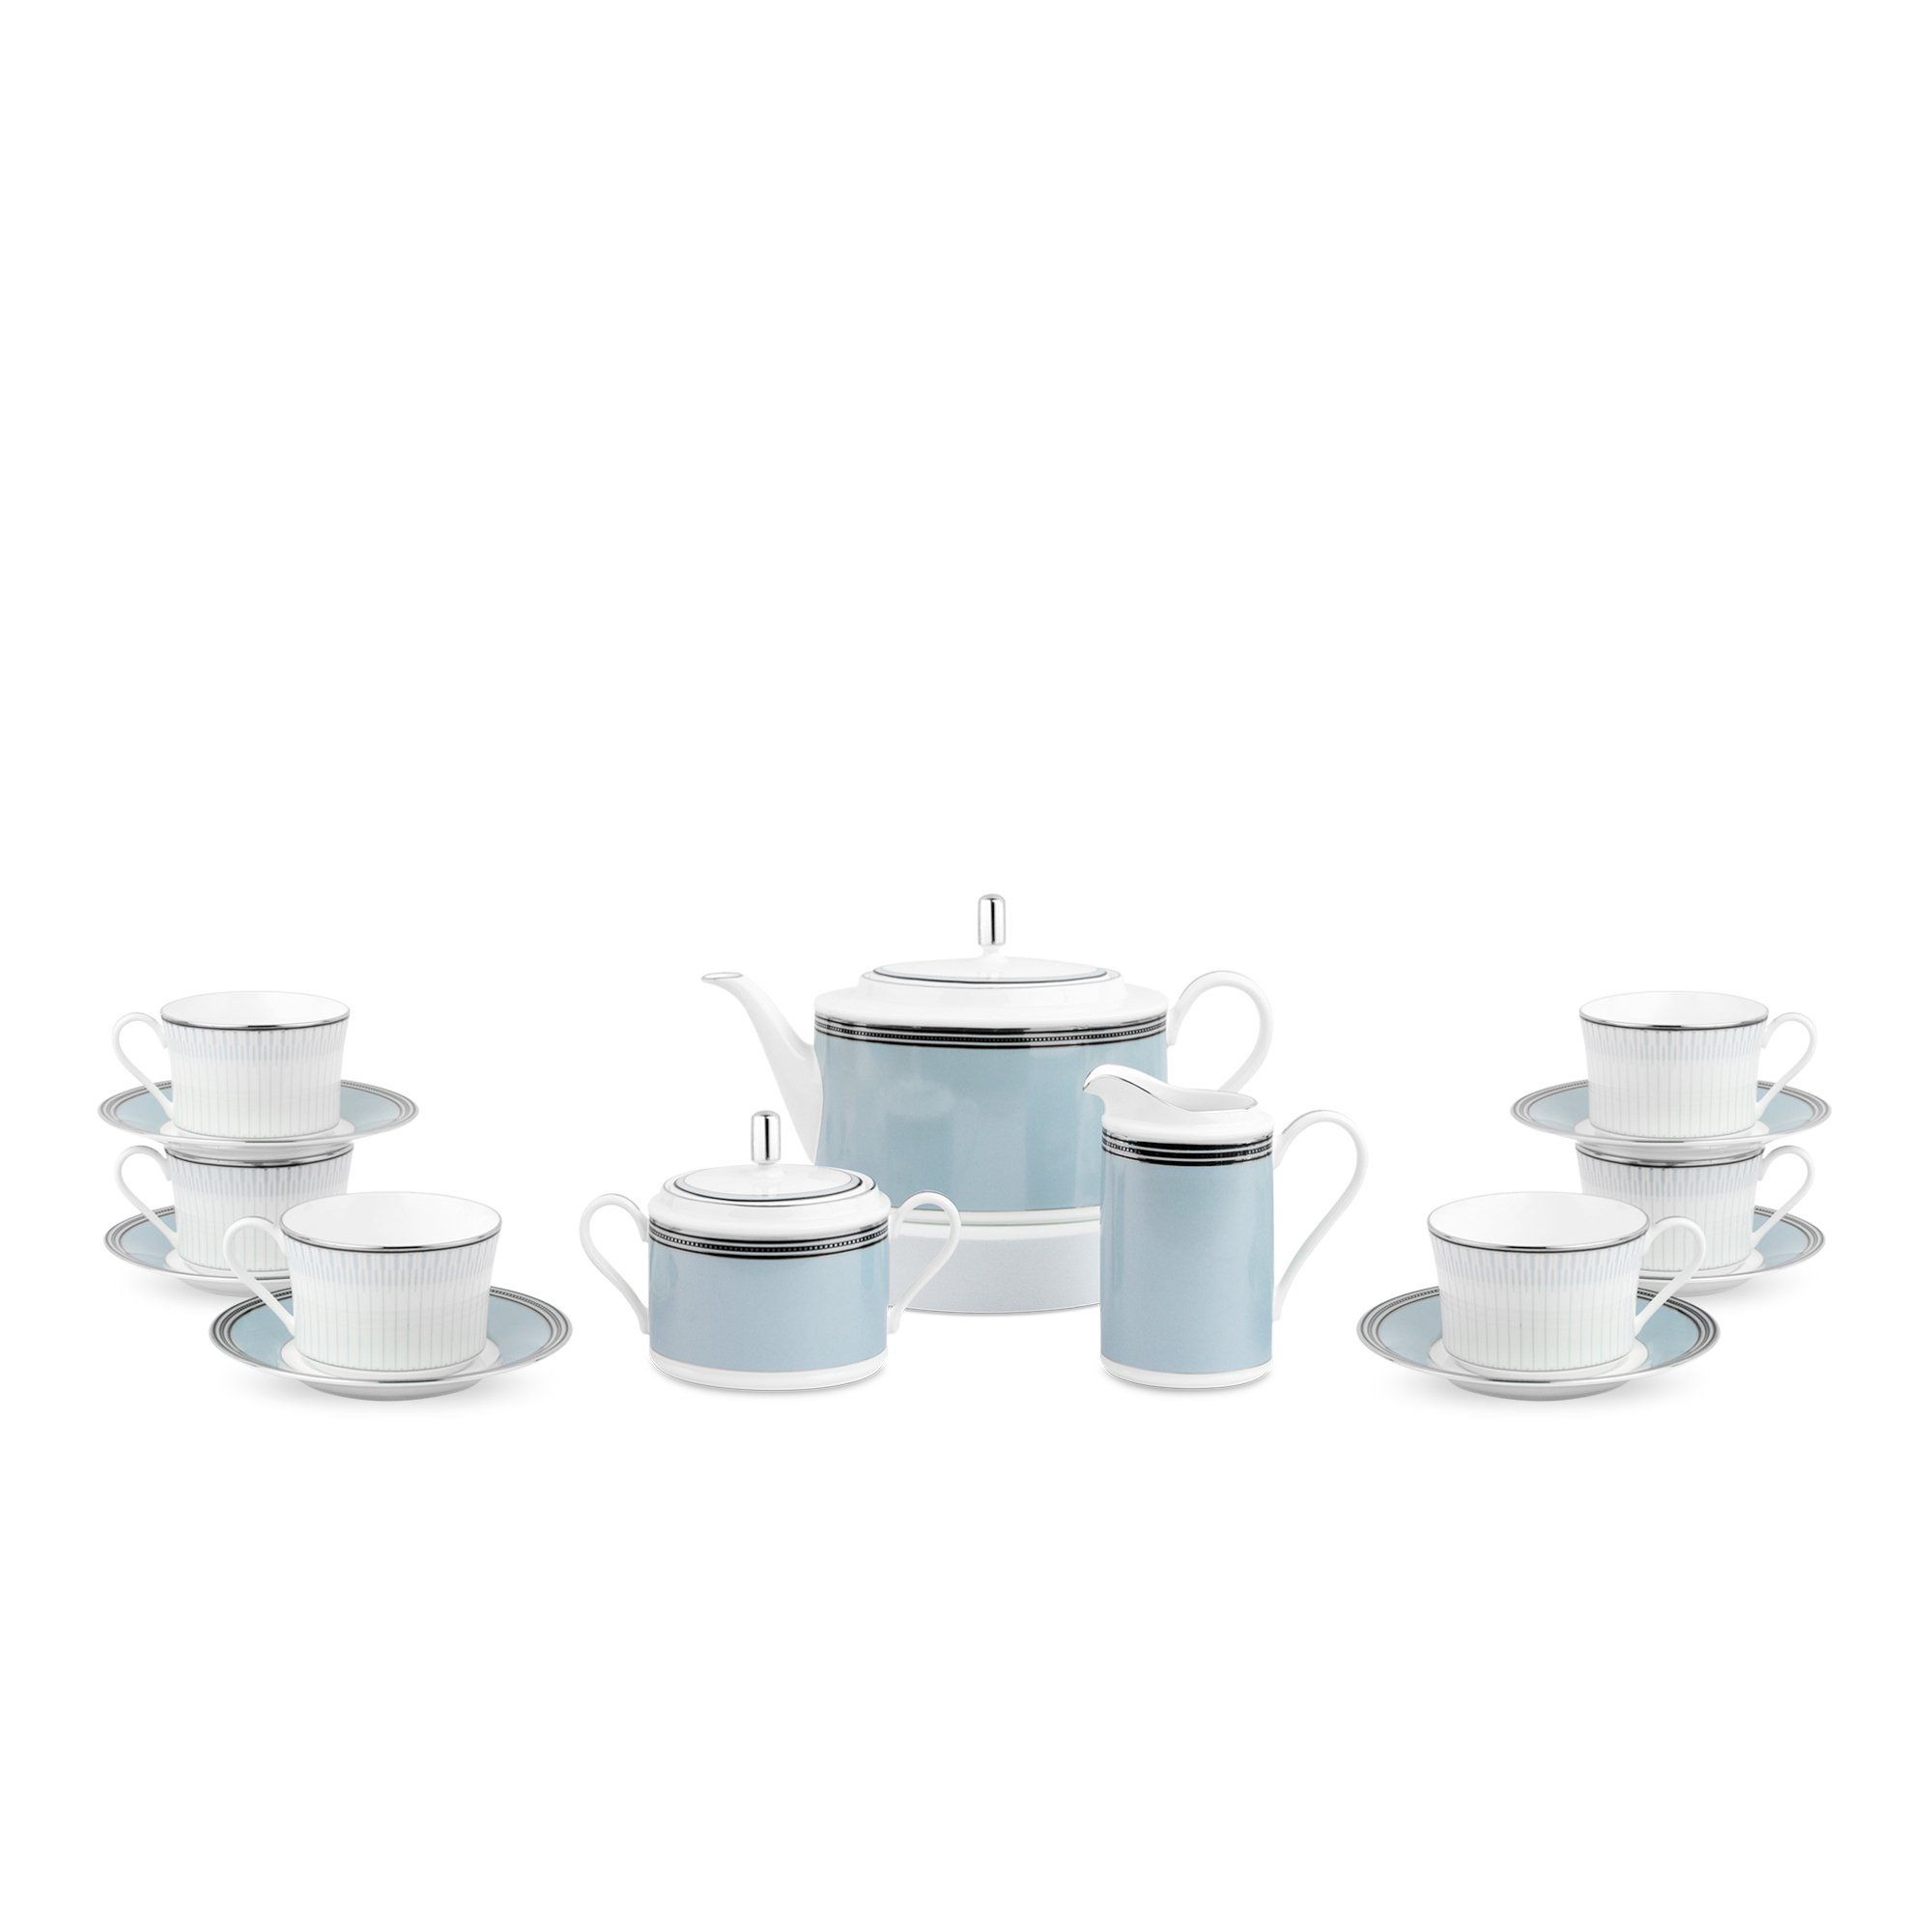  Bộ ấm chén uống trà 15 món | Bogart Platinum 4958 